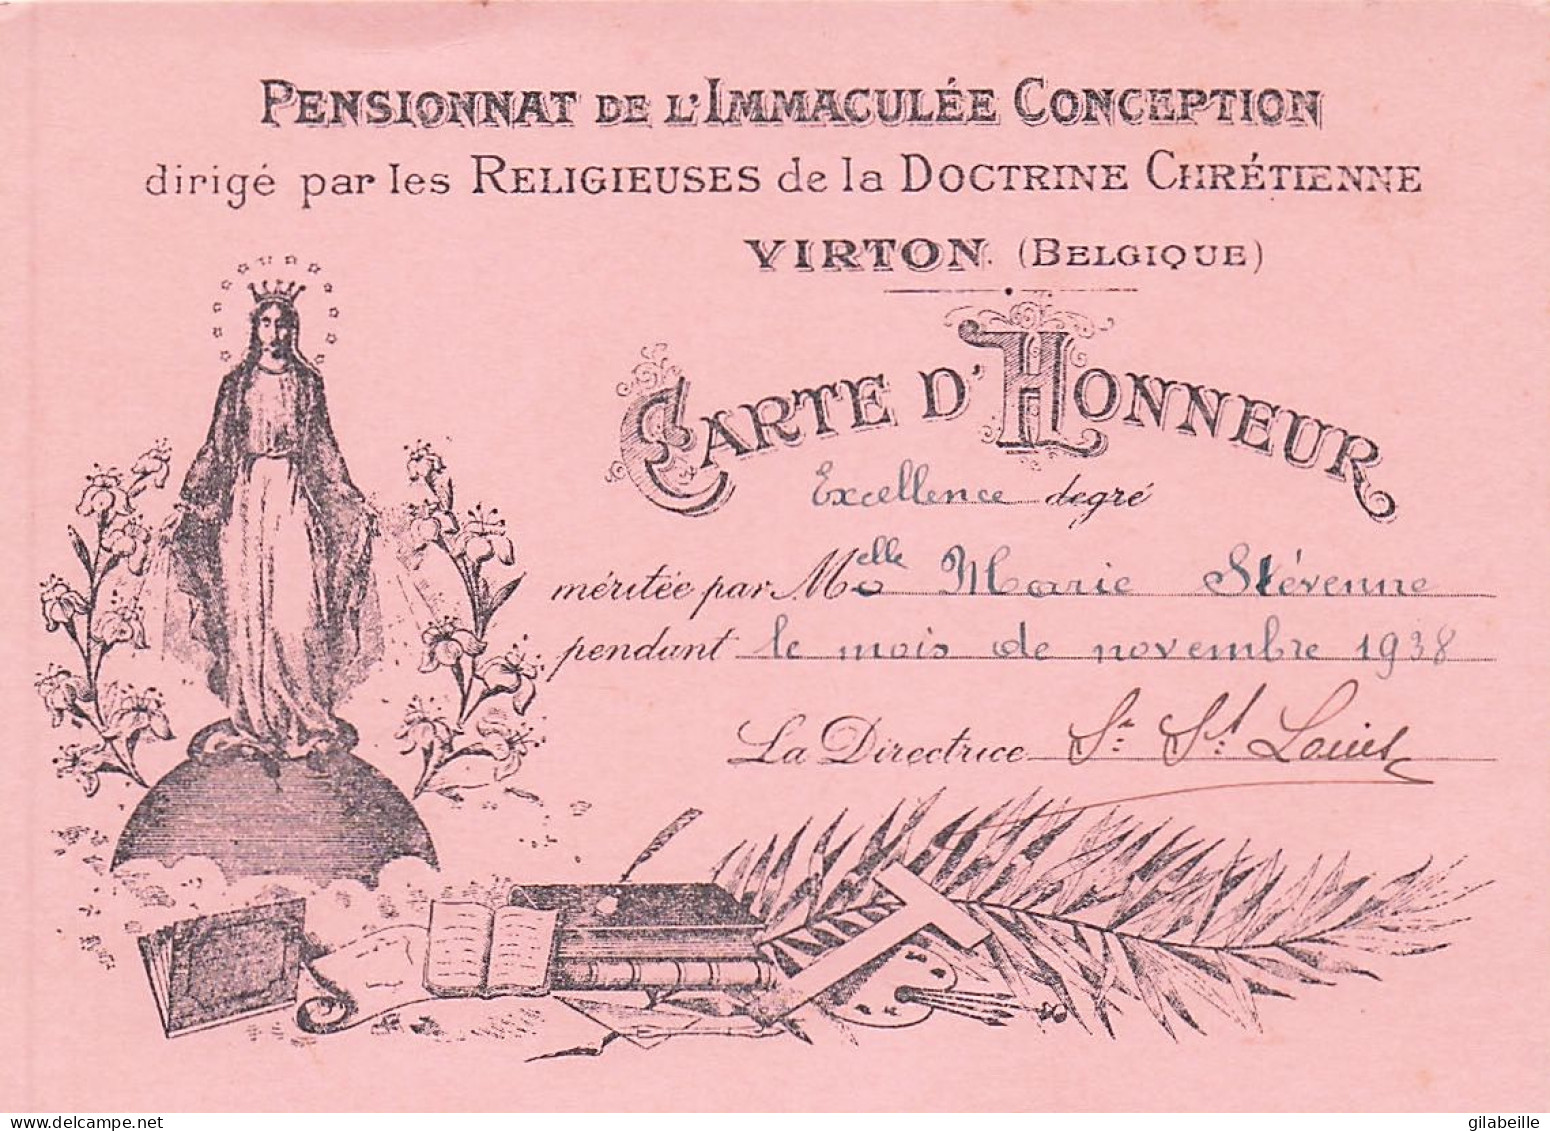 Luxembourg - VIRTON - Carte D'honneurdegré Excellence - Pensionnat De L'immaculé Conception - Novembre 1938 - Diploma & School Reports